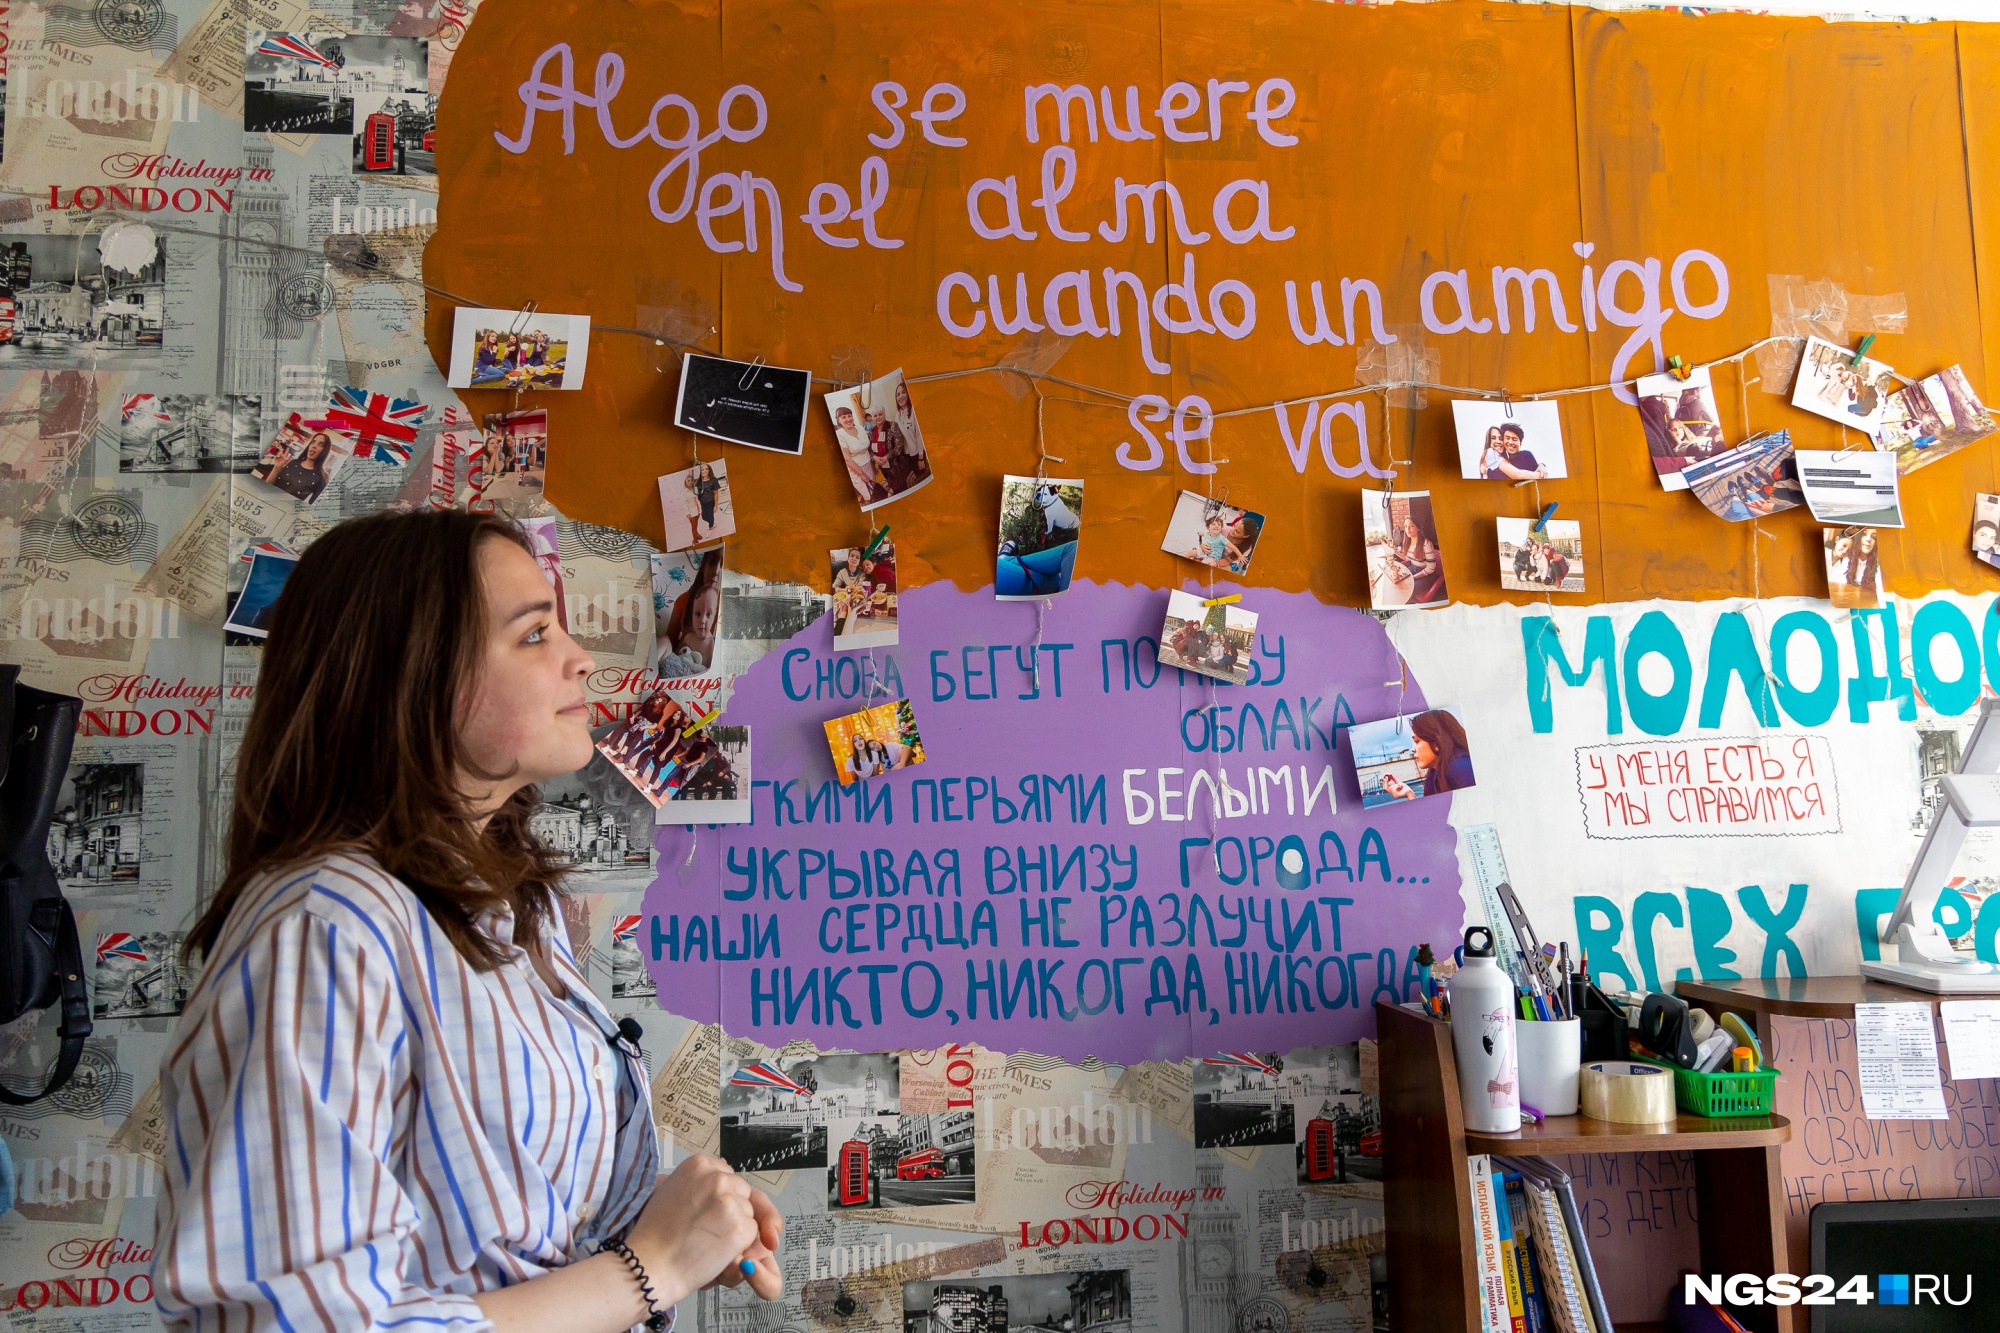 В комнате девочки стены исписаны фразами на испанском